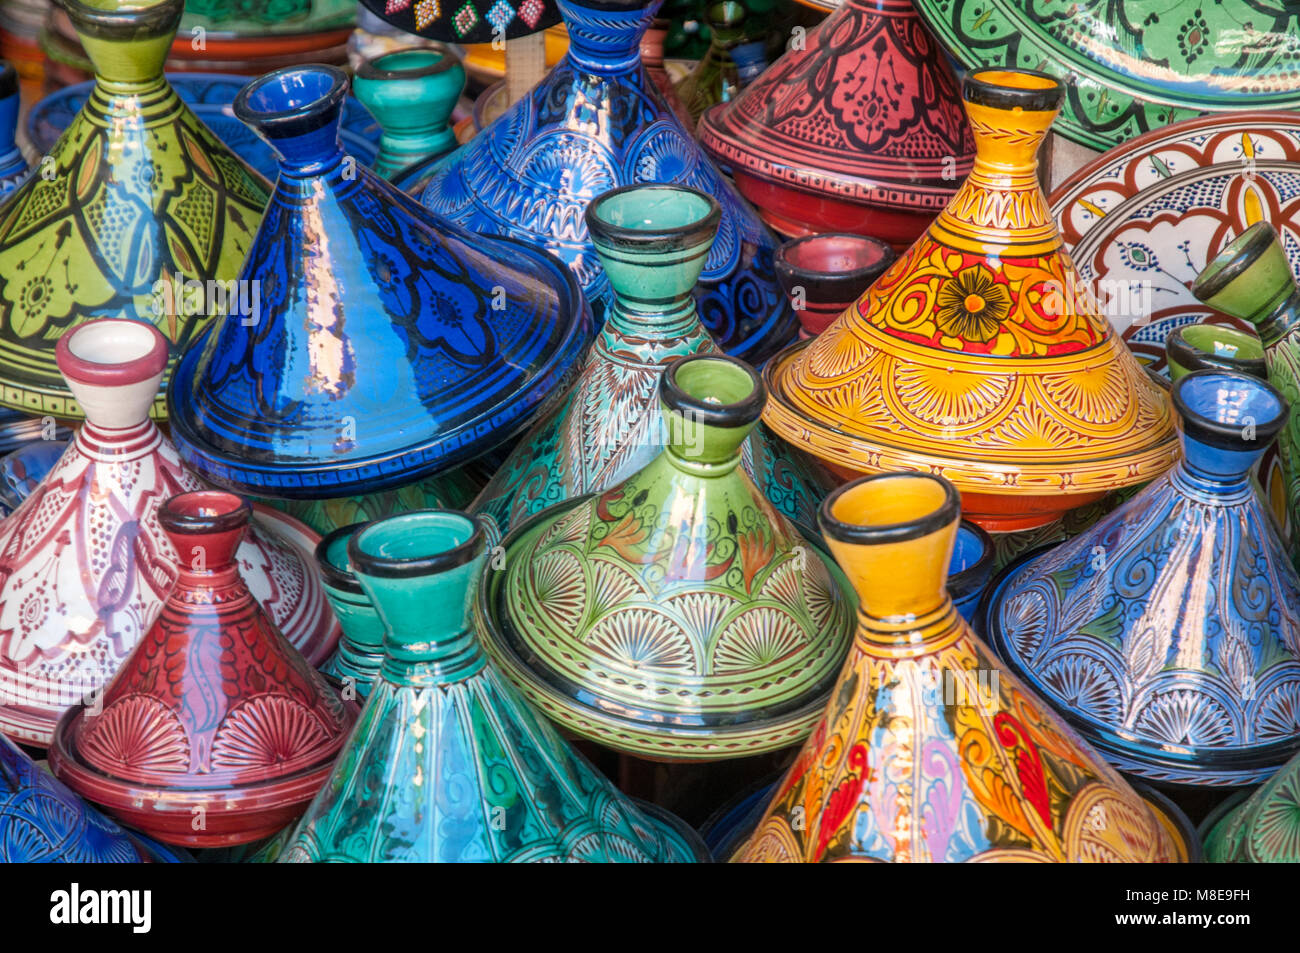 Ceramica decorativa gli ingredienti di base di una tagine sul display in un negozio di ceramiche nei souks appena fuori dalla piazza Jemaa el Fna a Marrakech, Marocco. Foto Stock